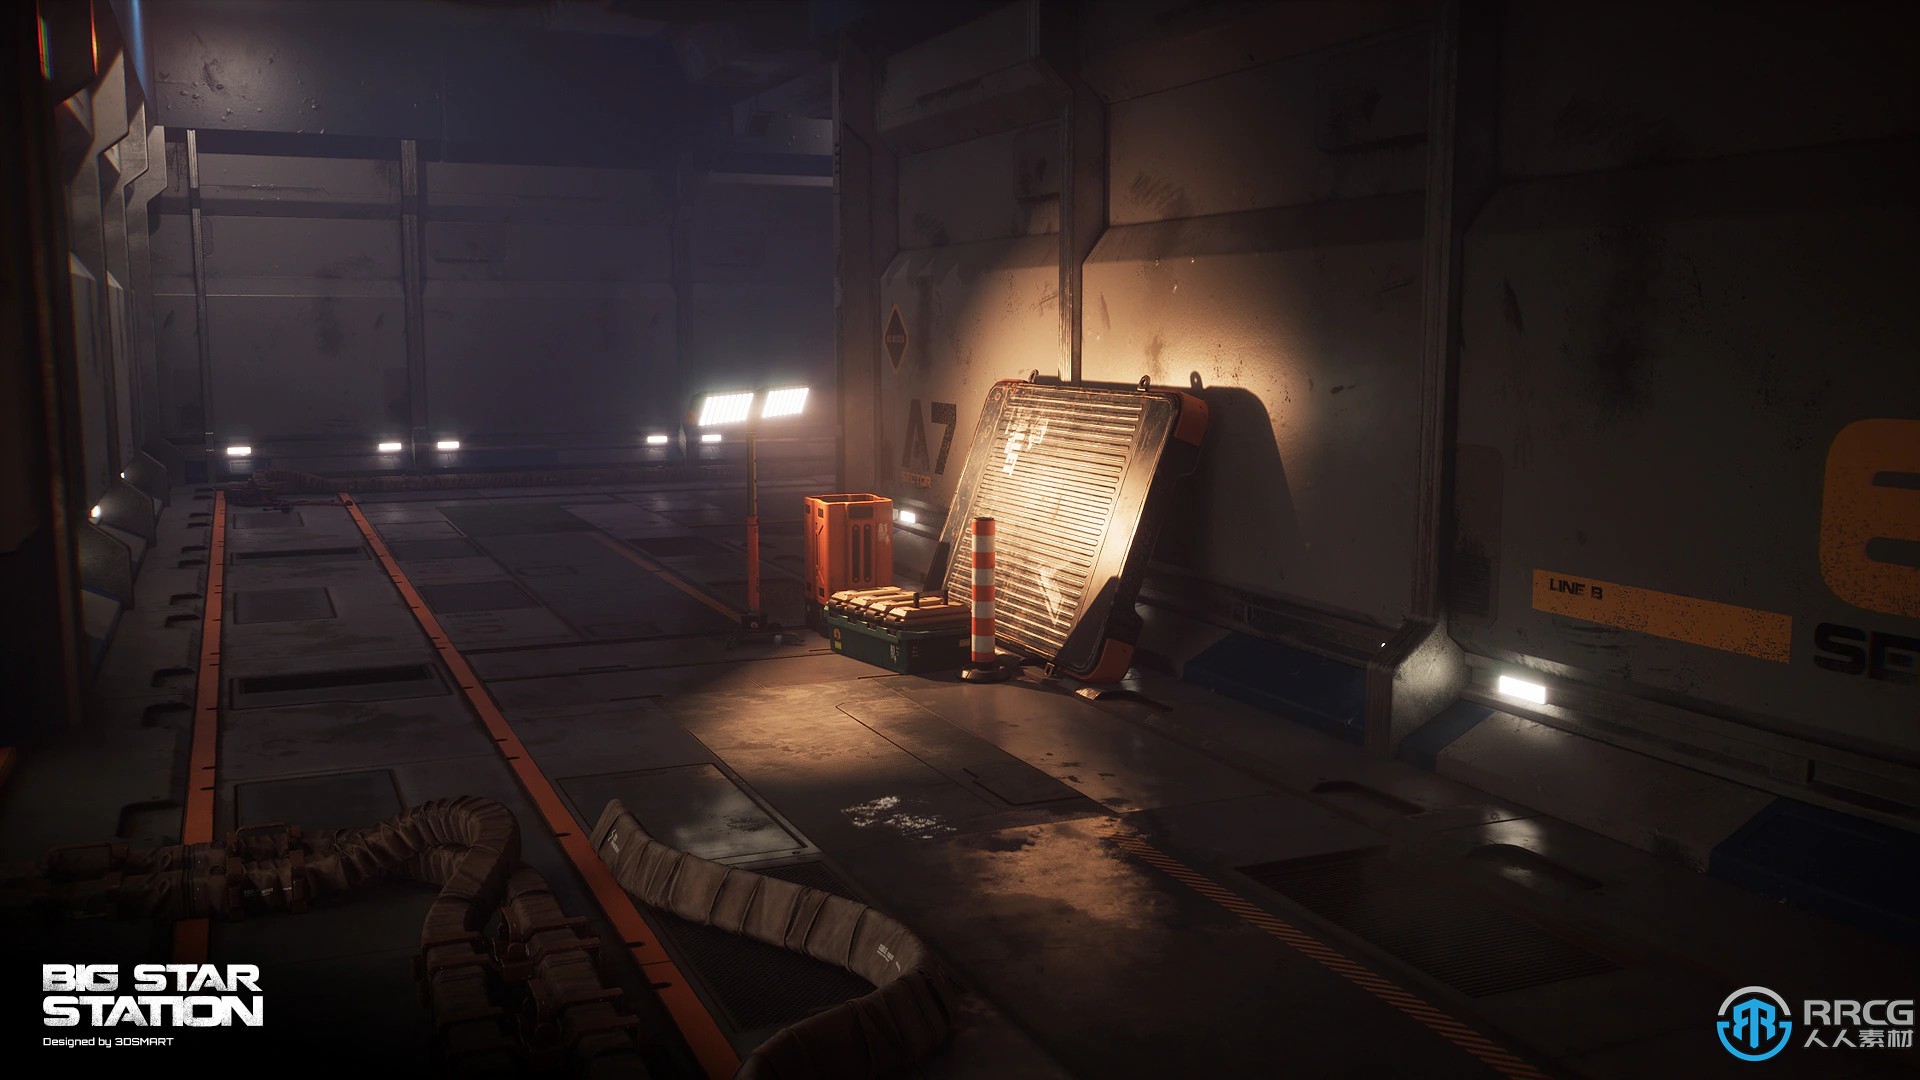 大型空间站飞船机库环境场景Unreal Engine游戏素材